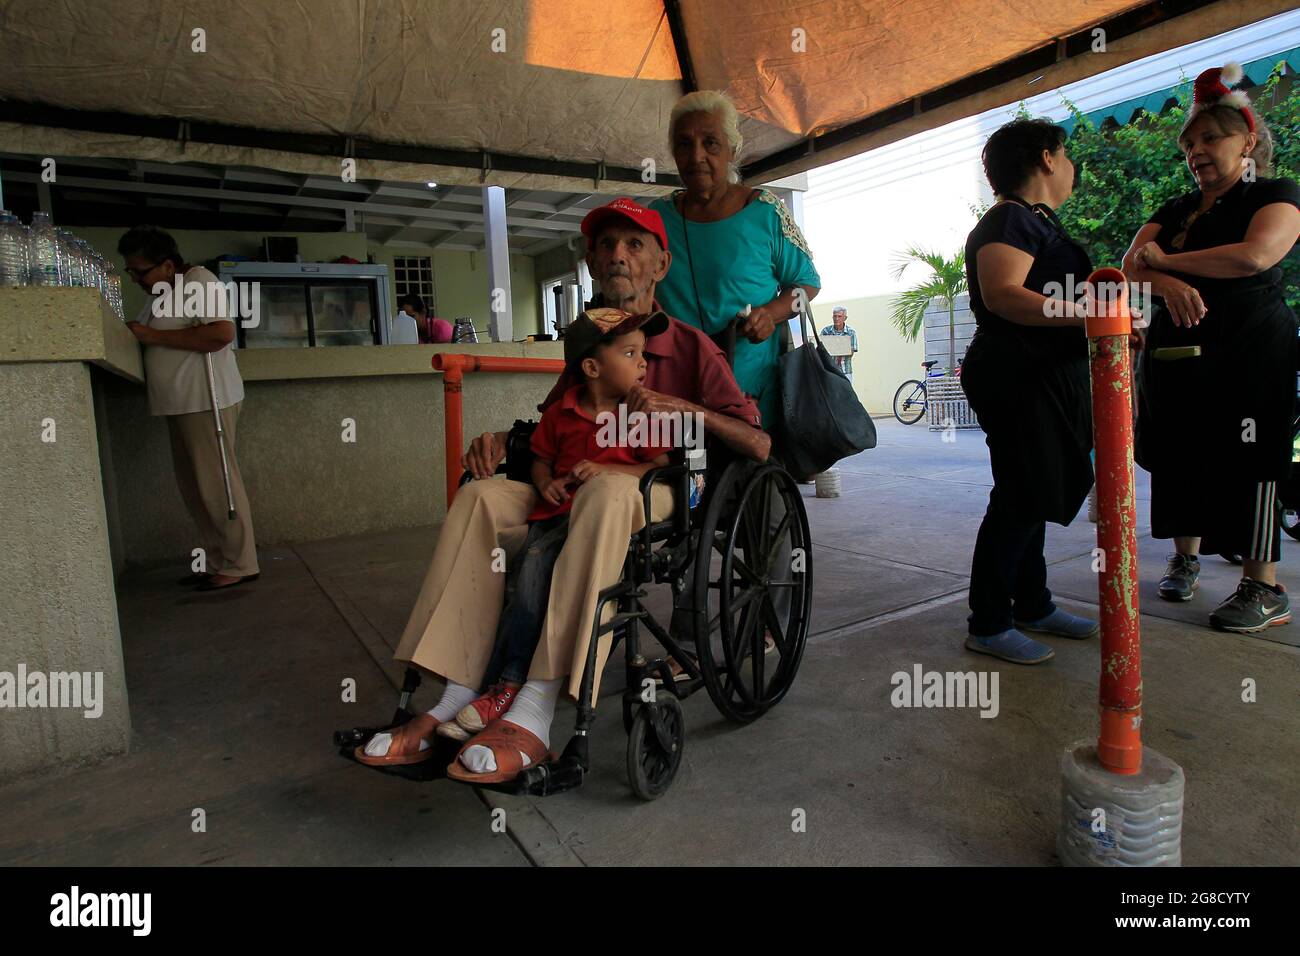 Maracaibo, Venezuela. Gli anziani disabili aspettano in un centro di beneficenza che offre loro pranzi. Foto di: José Bula Foto Stock